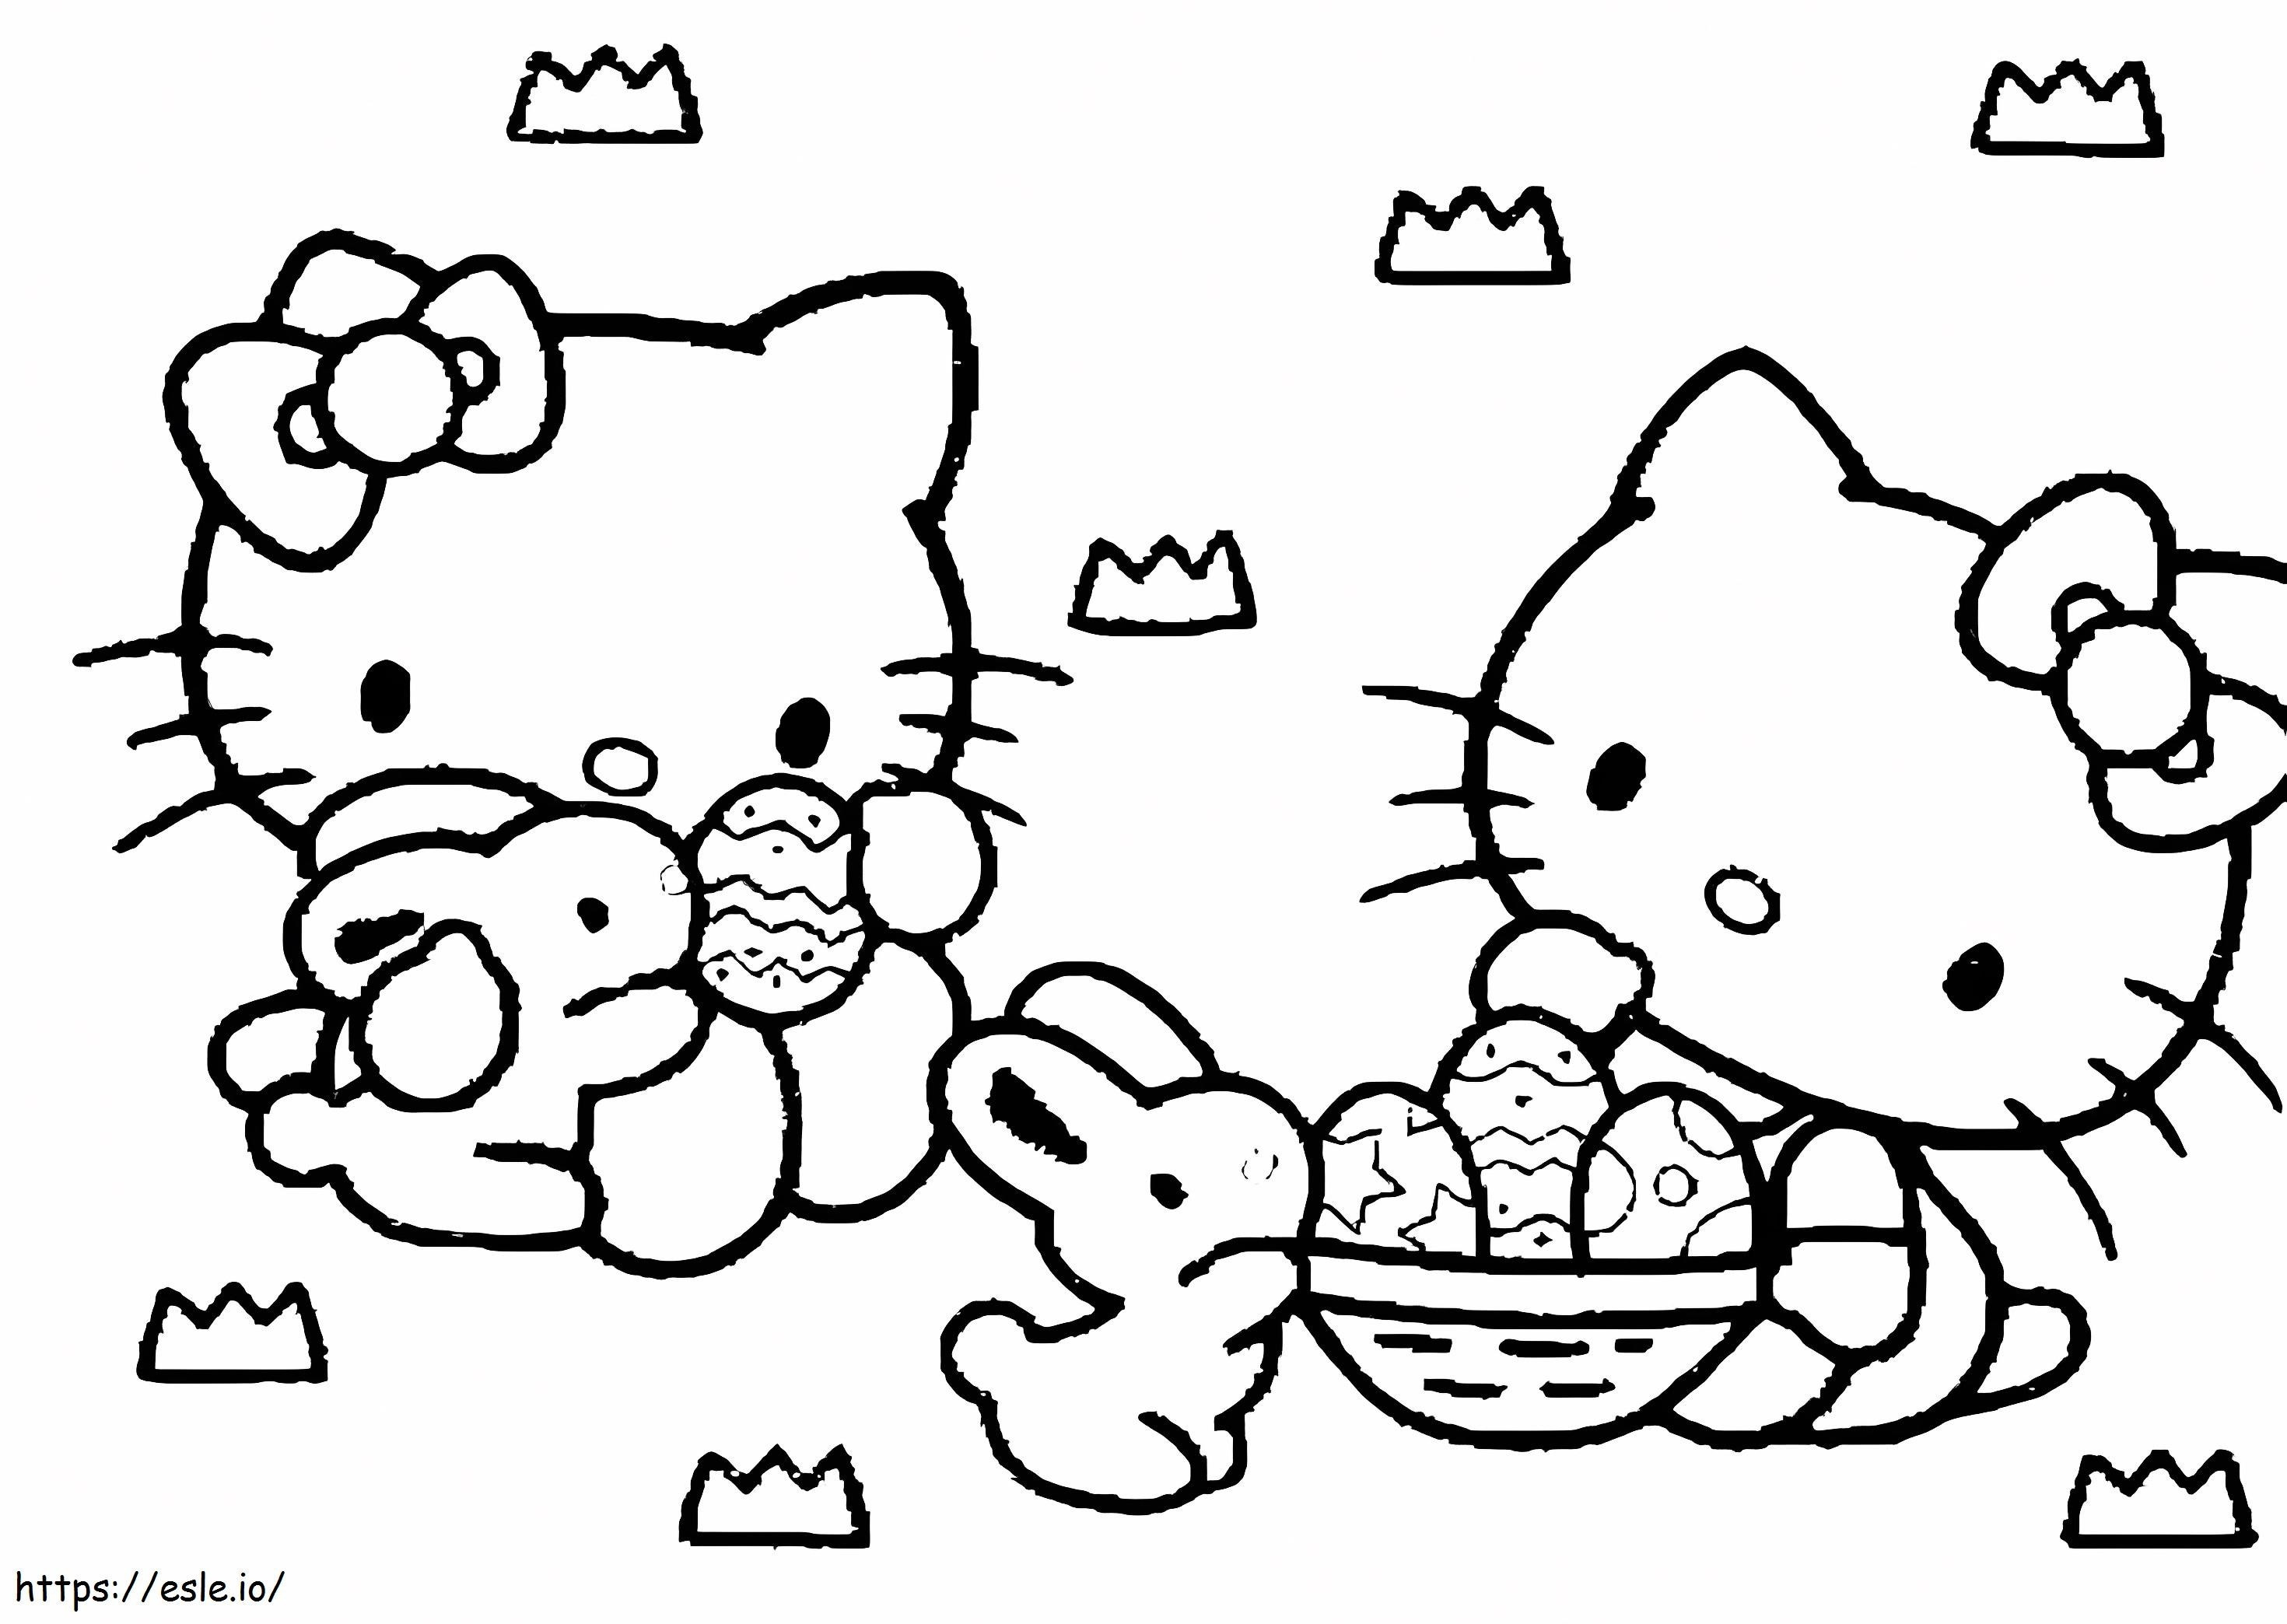 Coloriage Hello Kitty avec oeuf de Pâques à imprimer dessin